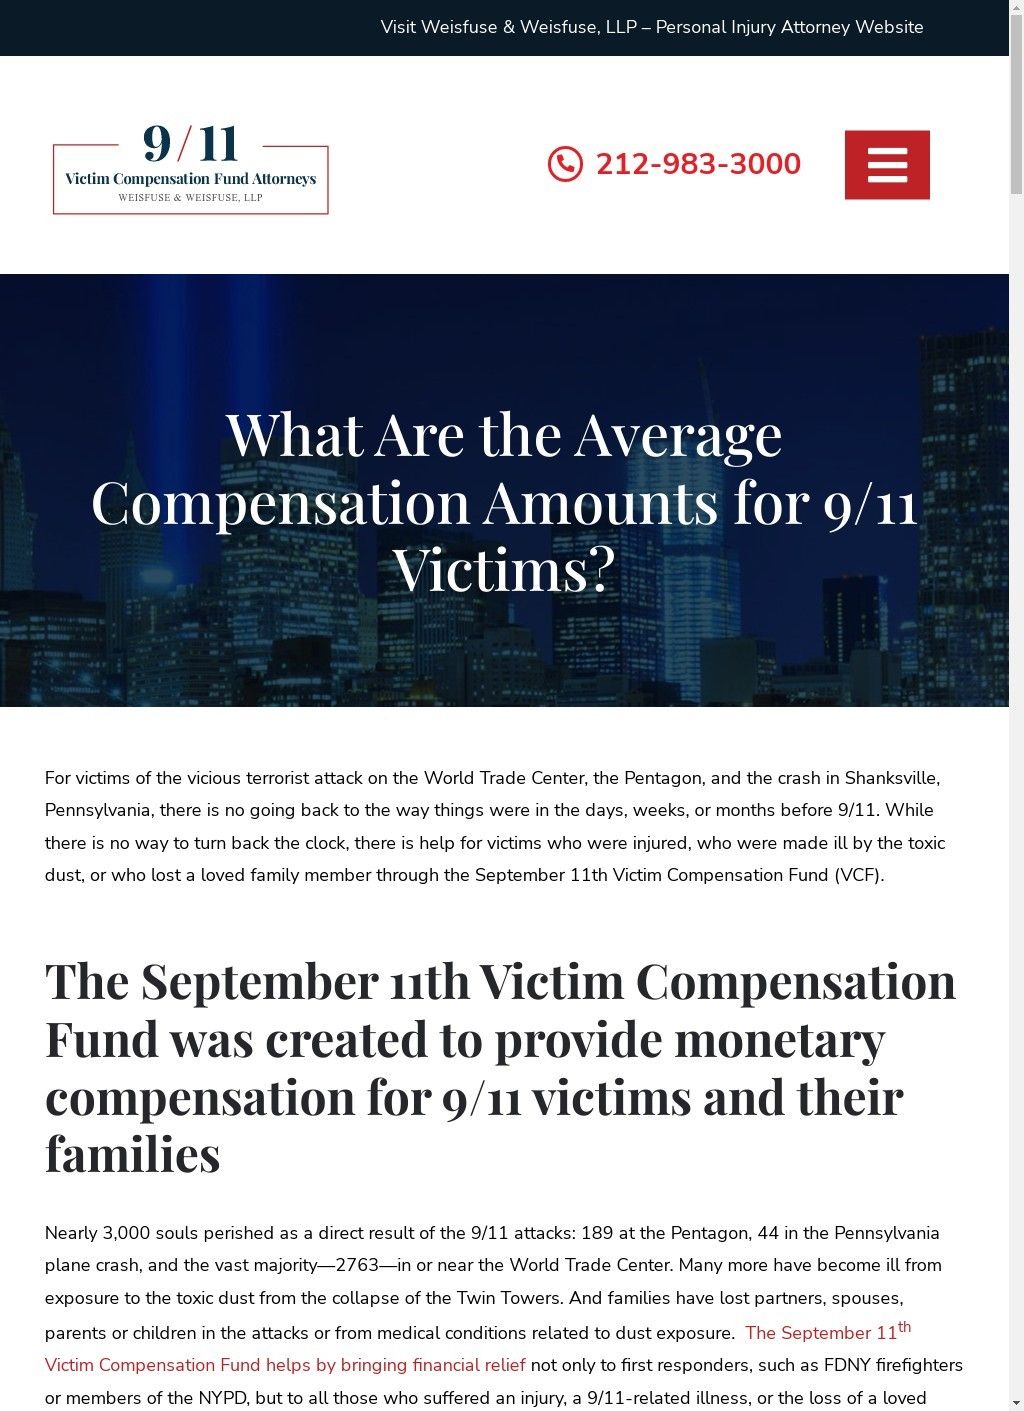 9/11 Victim Compensation Fund Attorney